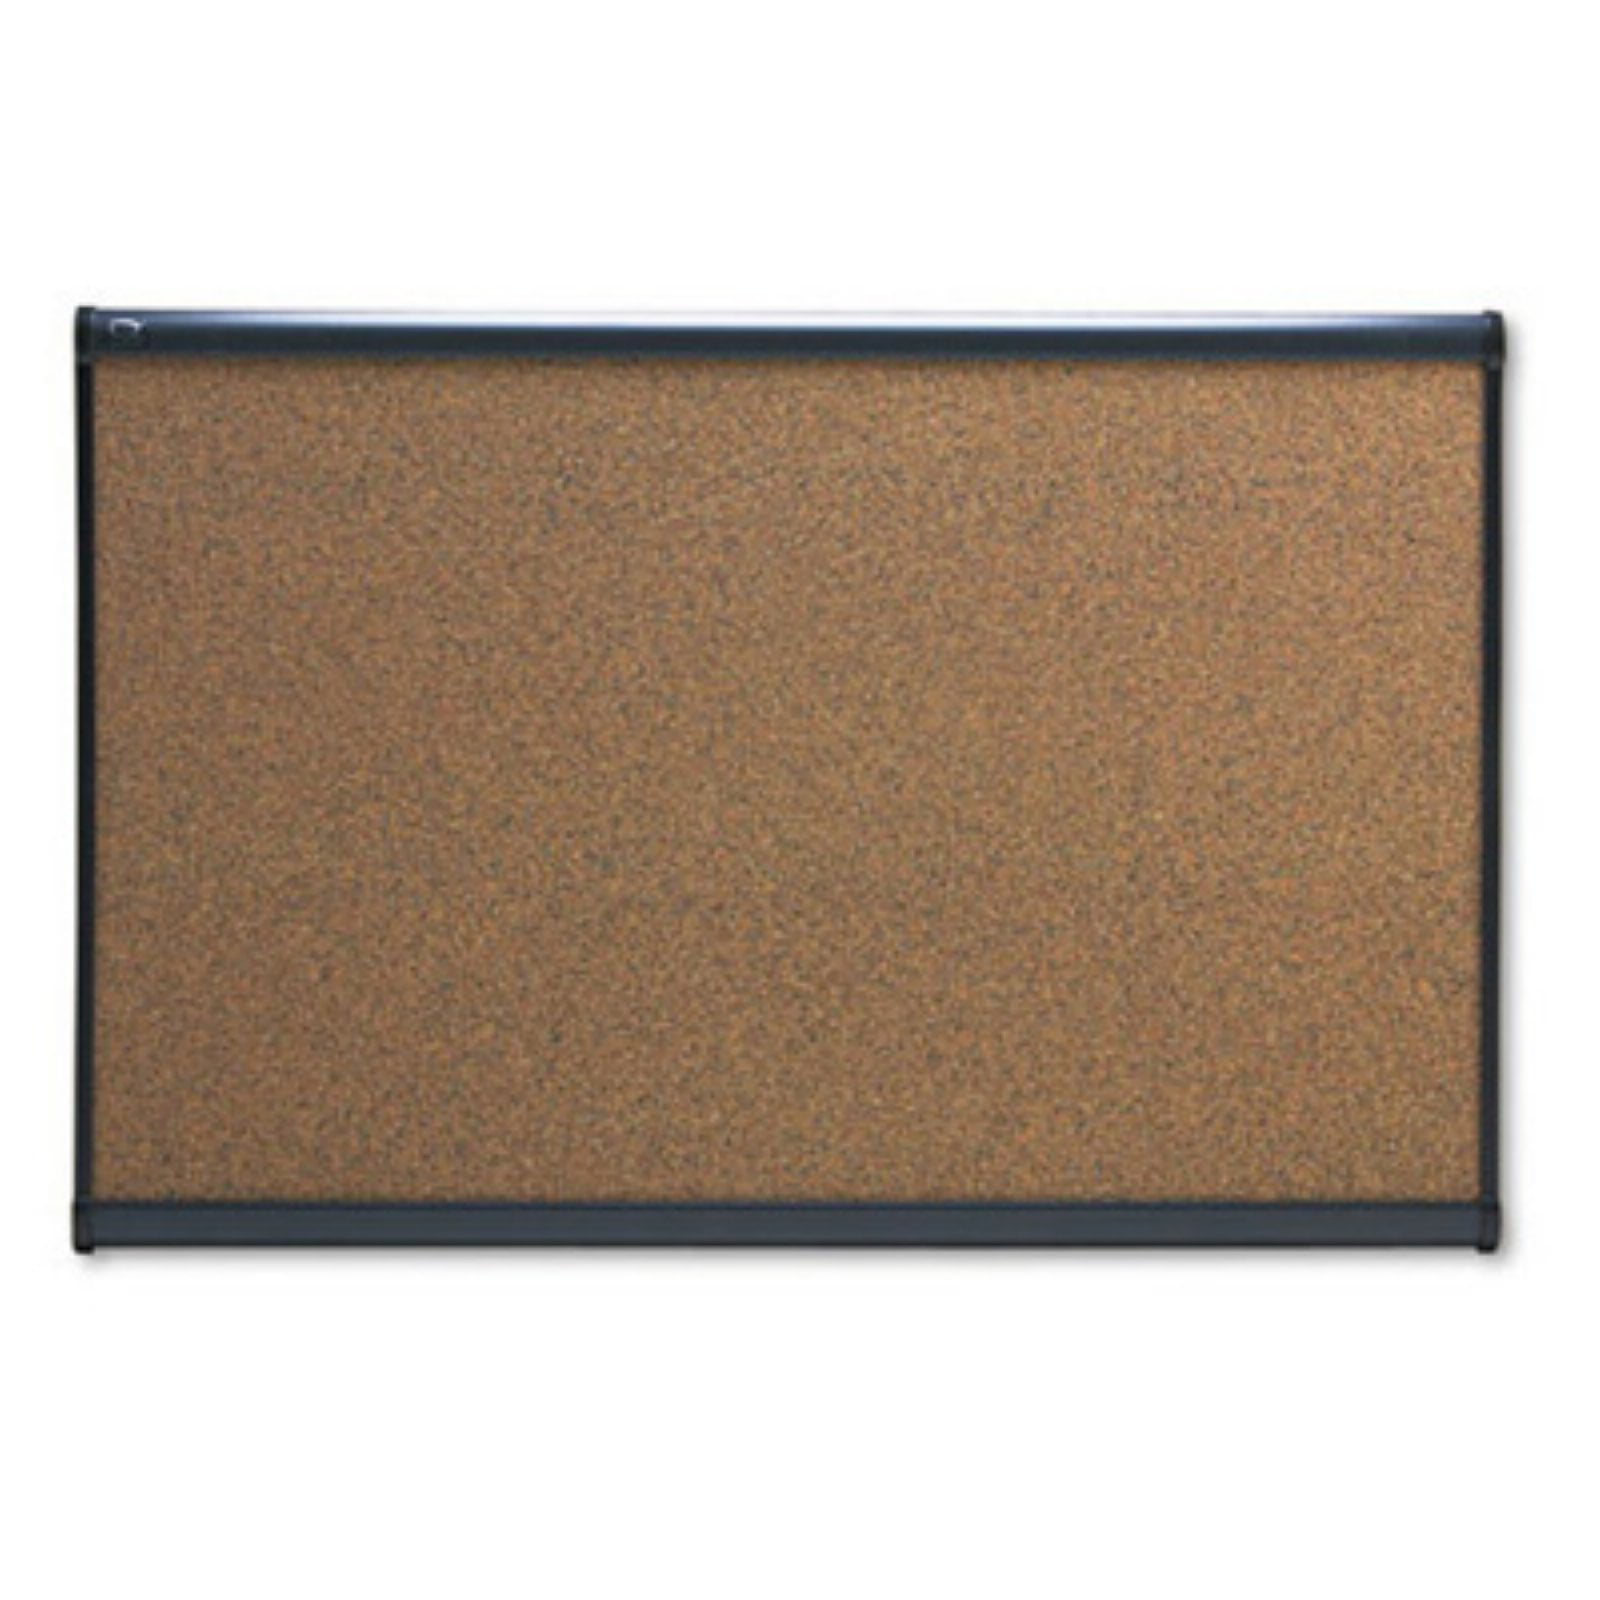 FORAY Cork Board 36-in x 48-in Tan Cork Light Oak Frame 698535 HOTT DEALS 